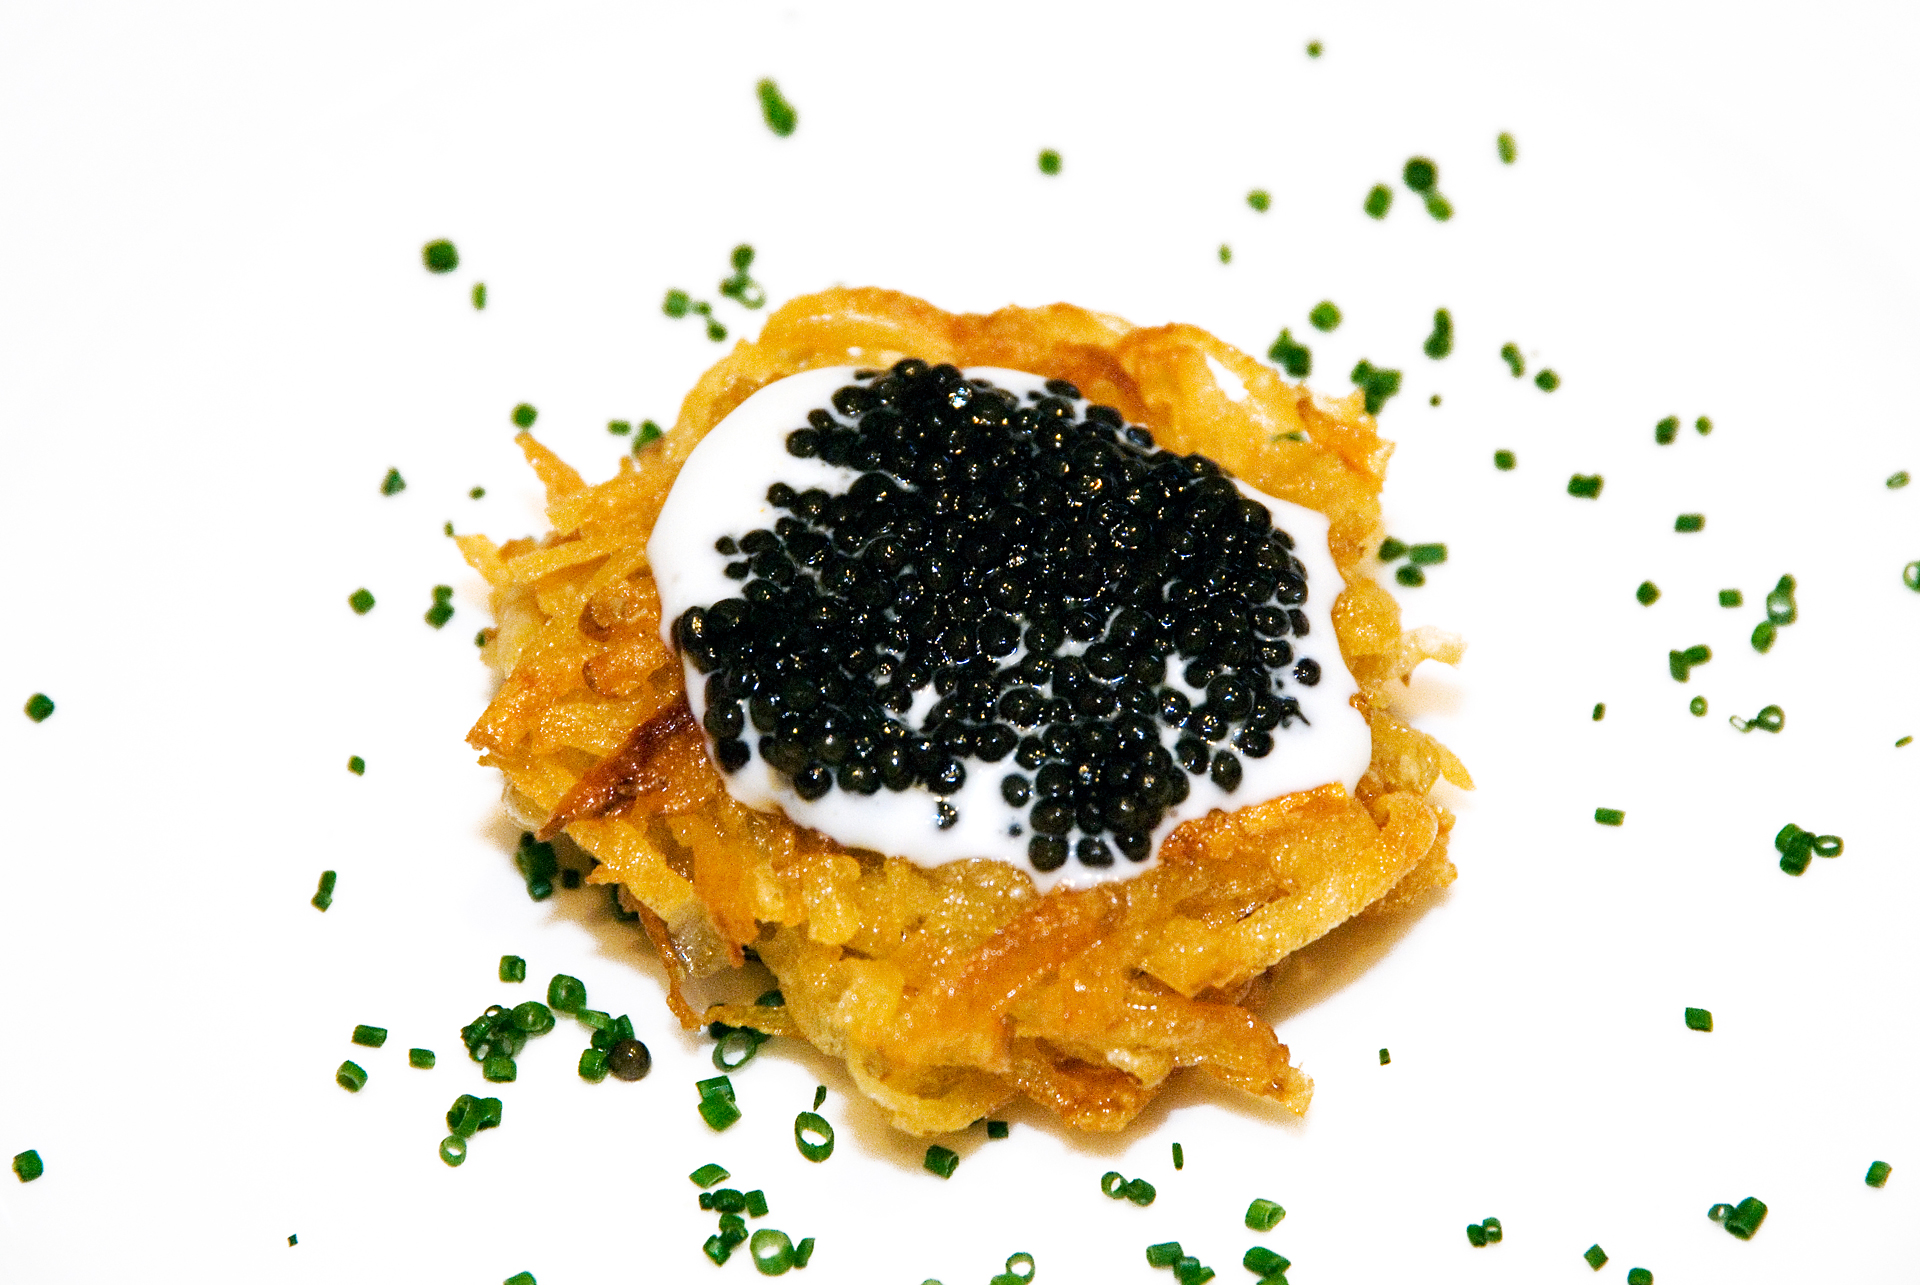 Crisp Rosti Potato with creme fraiche and caviar.